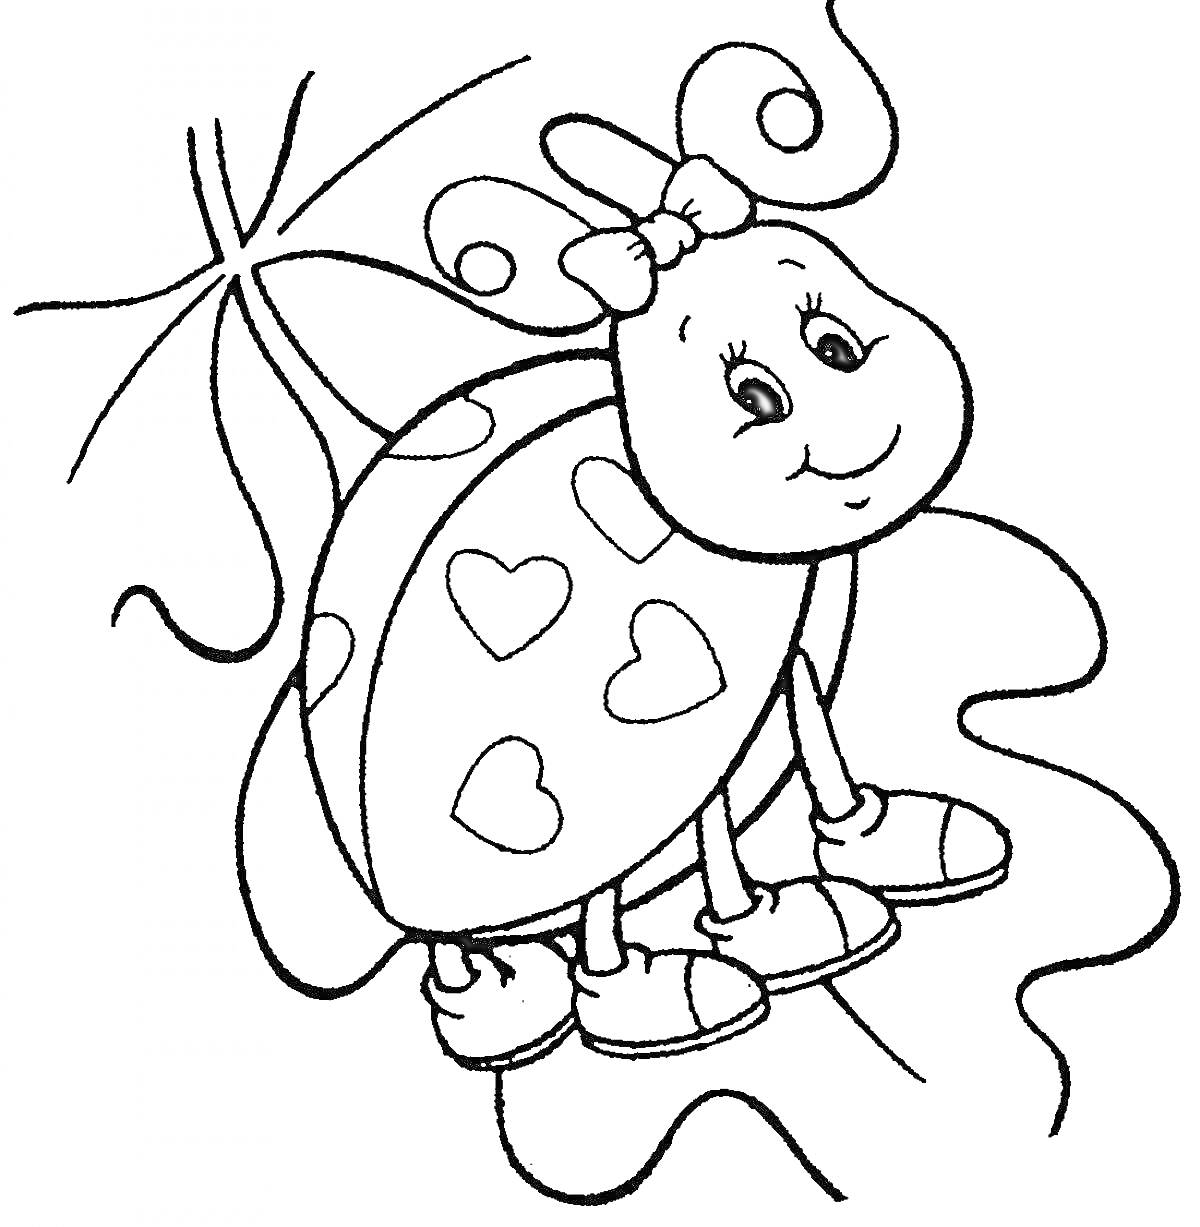 Раскраска Божья коровка с бантиком и сердечками, на фоне растения и изогнутой линейной дорожки